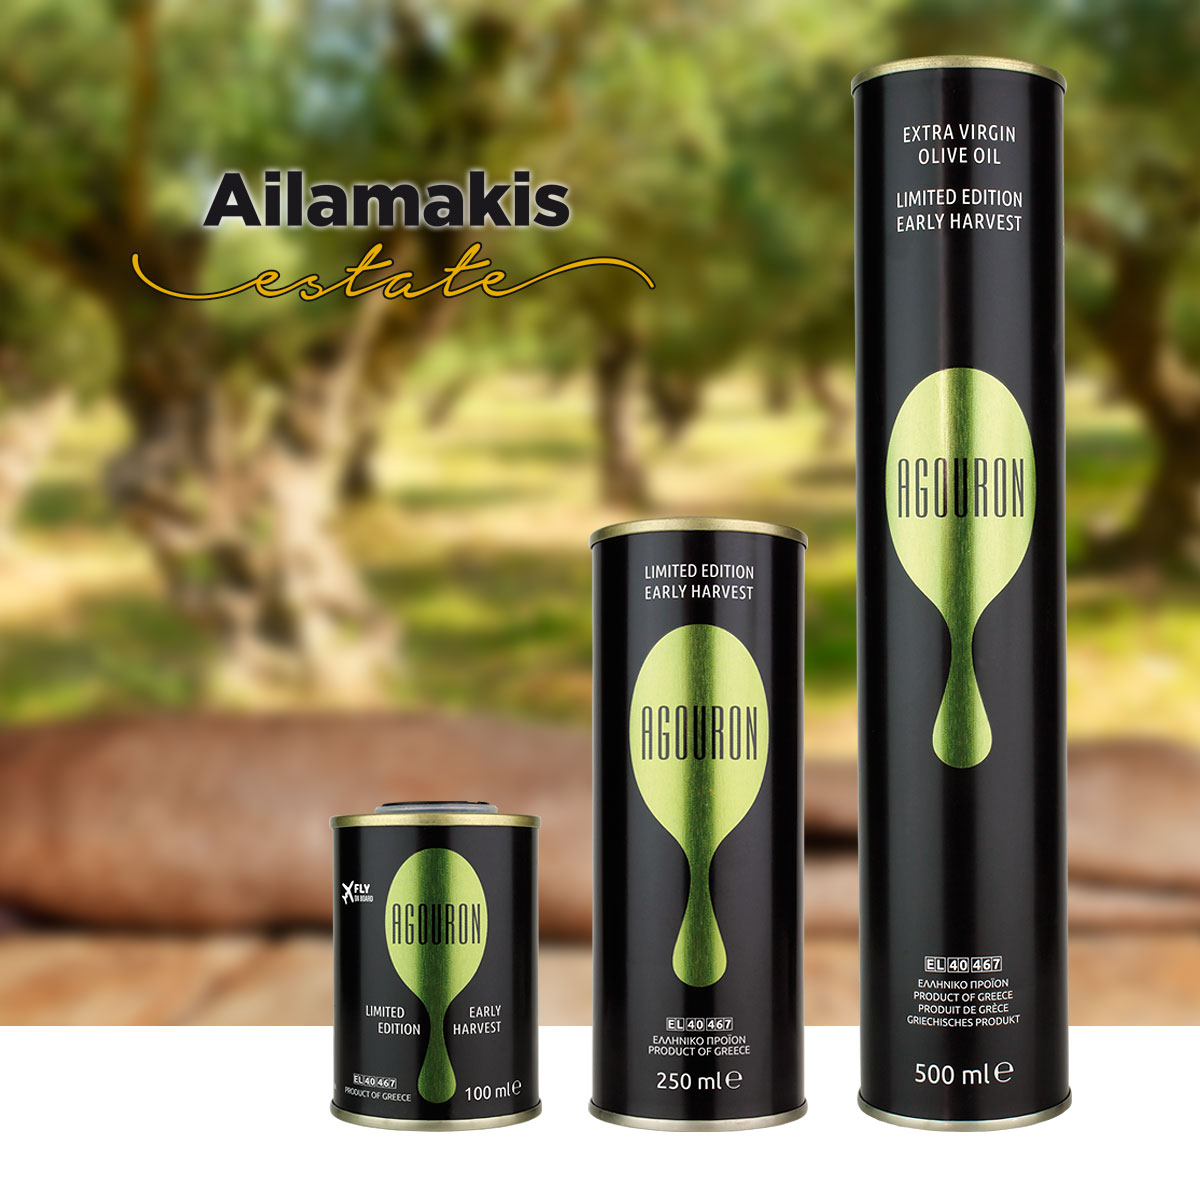 Ailamakis Estate AGOURON olive oil